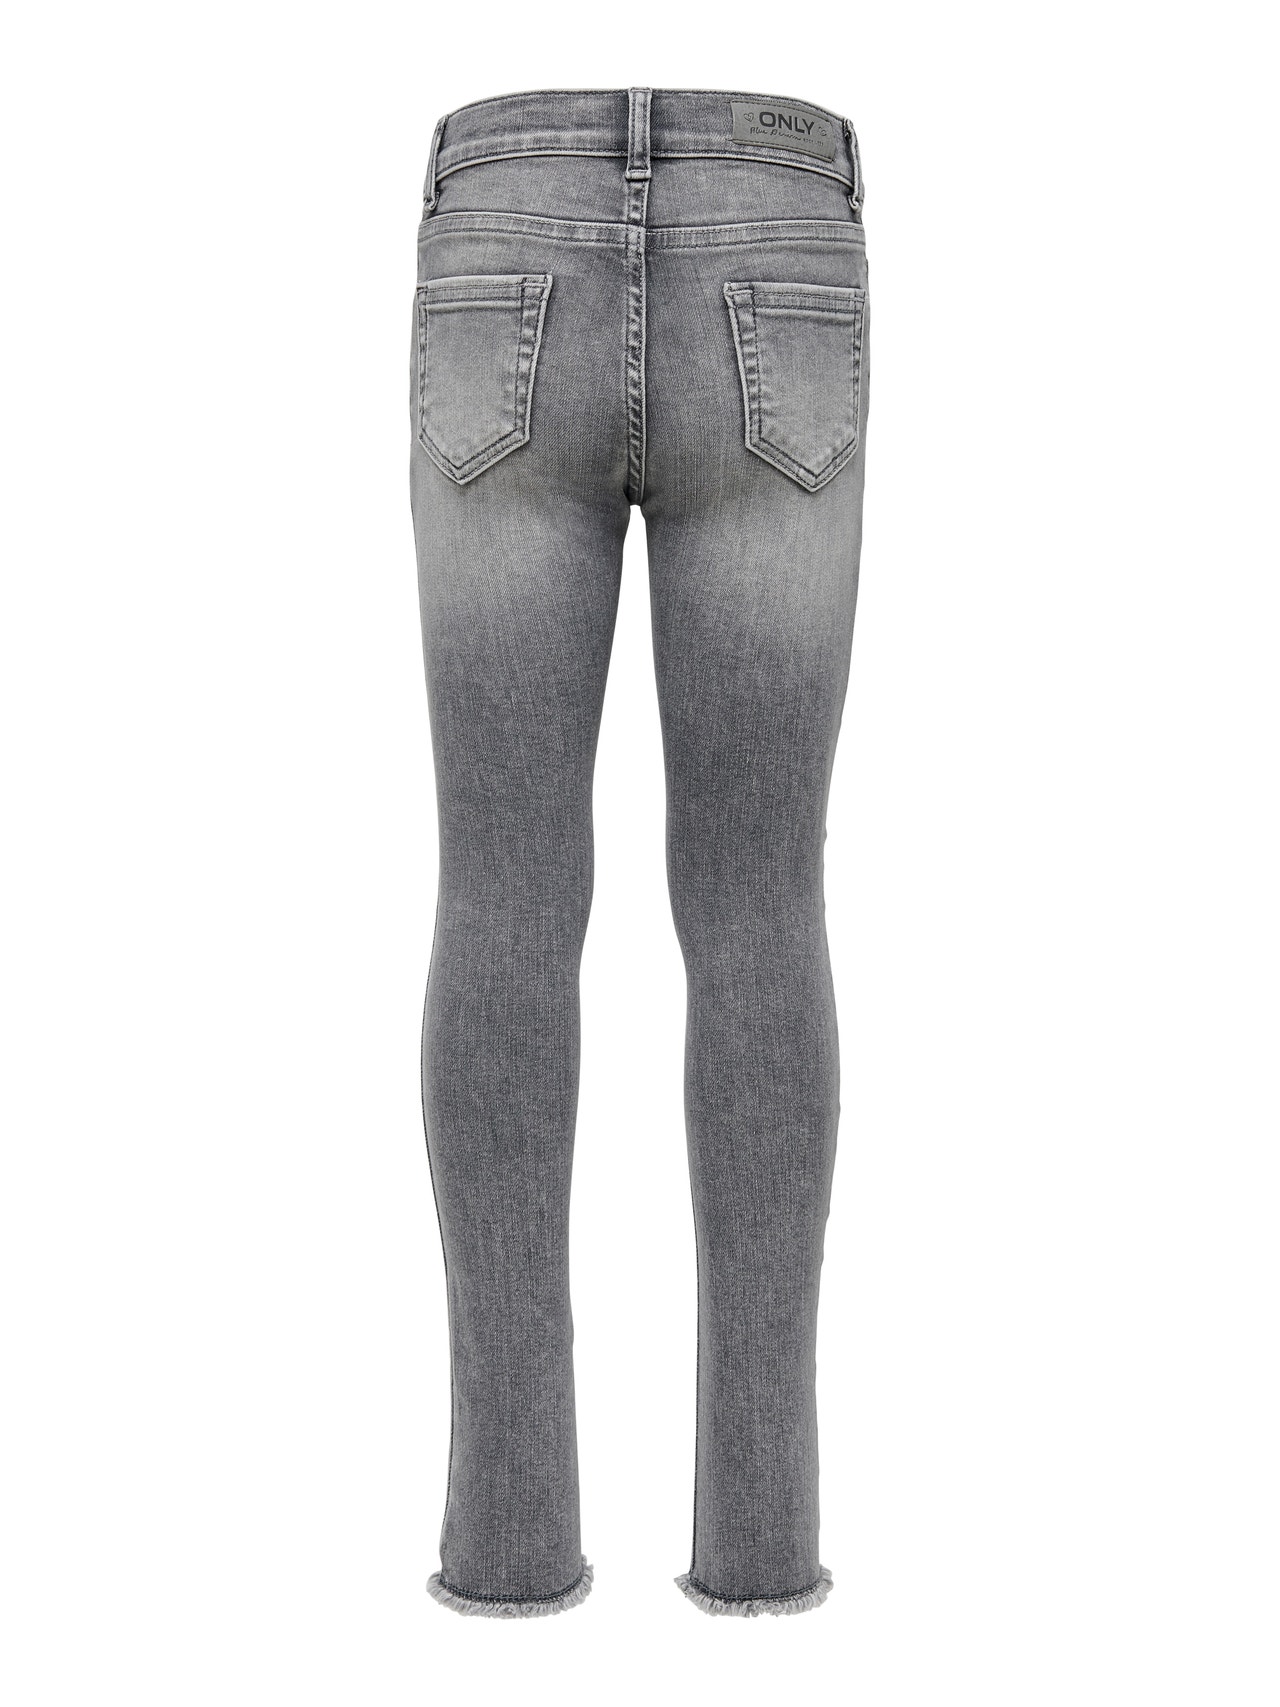 ONLY Jeans Skinny Fit Ourlet brut -Grey Denim - 15173843